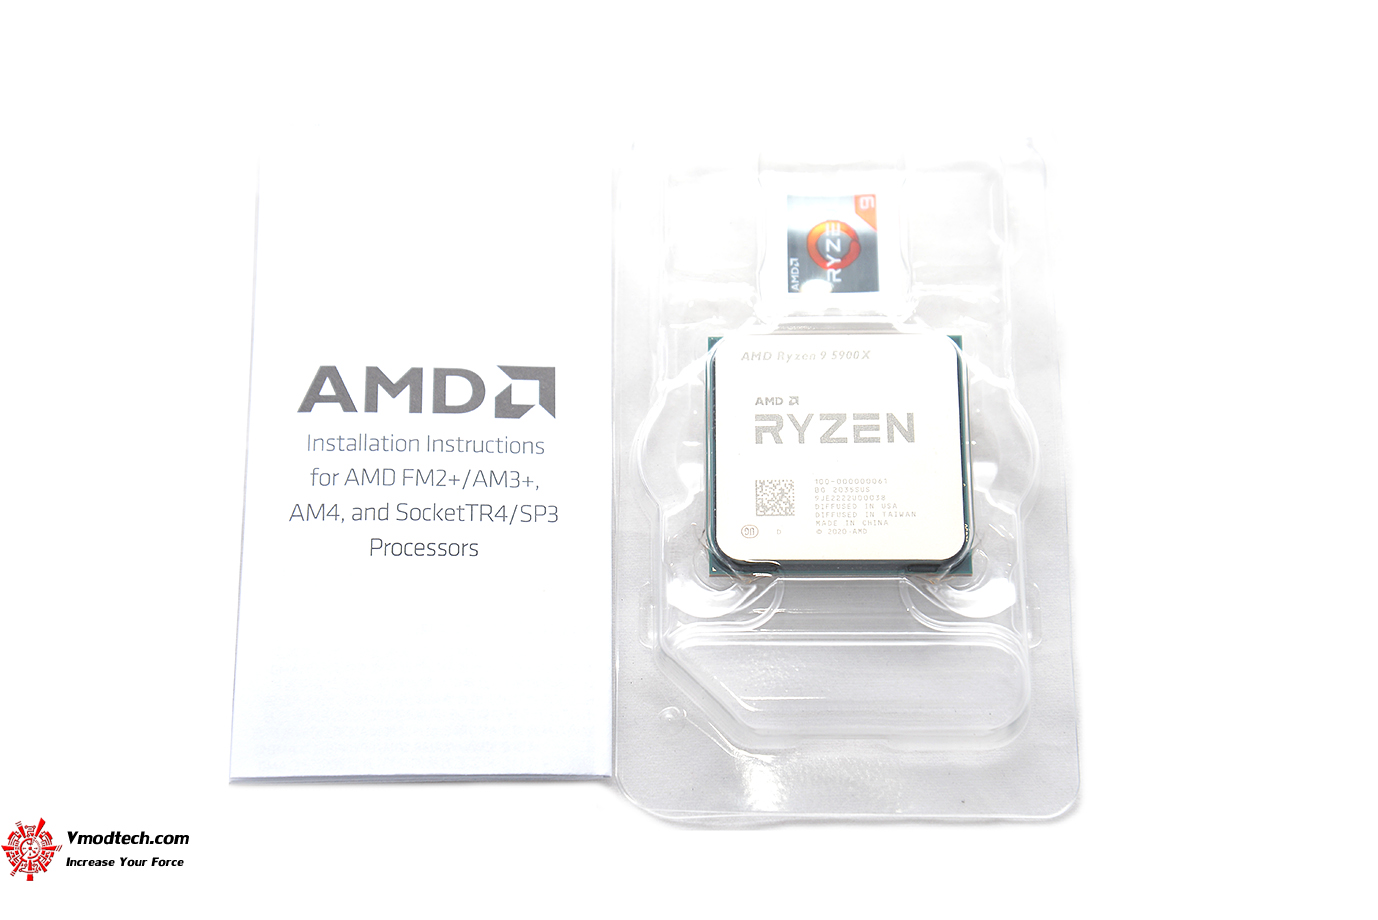 dsc 6546 AMD RYZEN 9 5900X PROCESSOR REVIEW